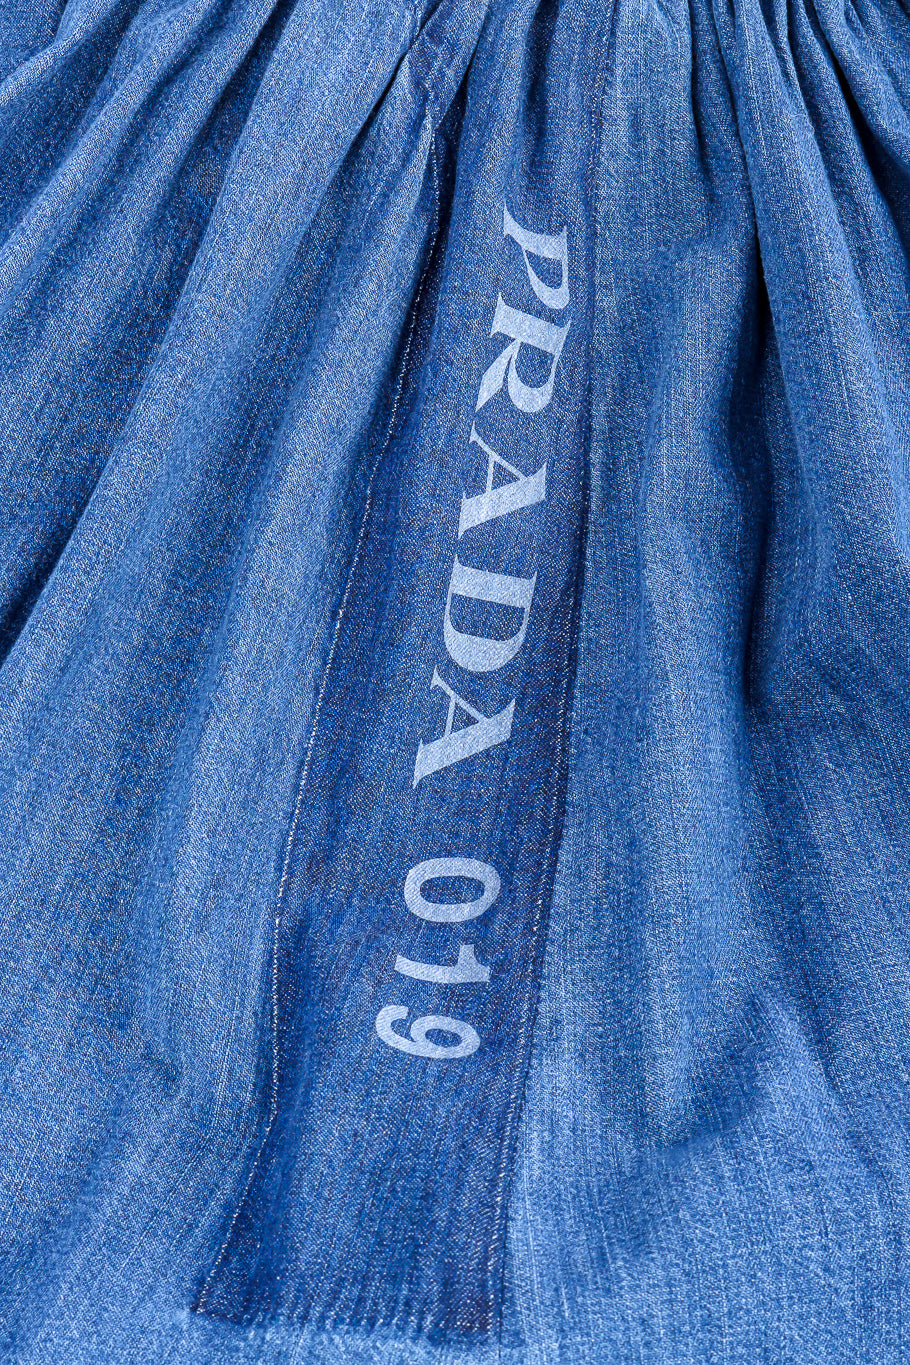 Prada denim peasant skirt designer detail @recessla